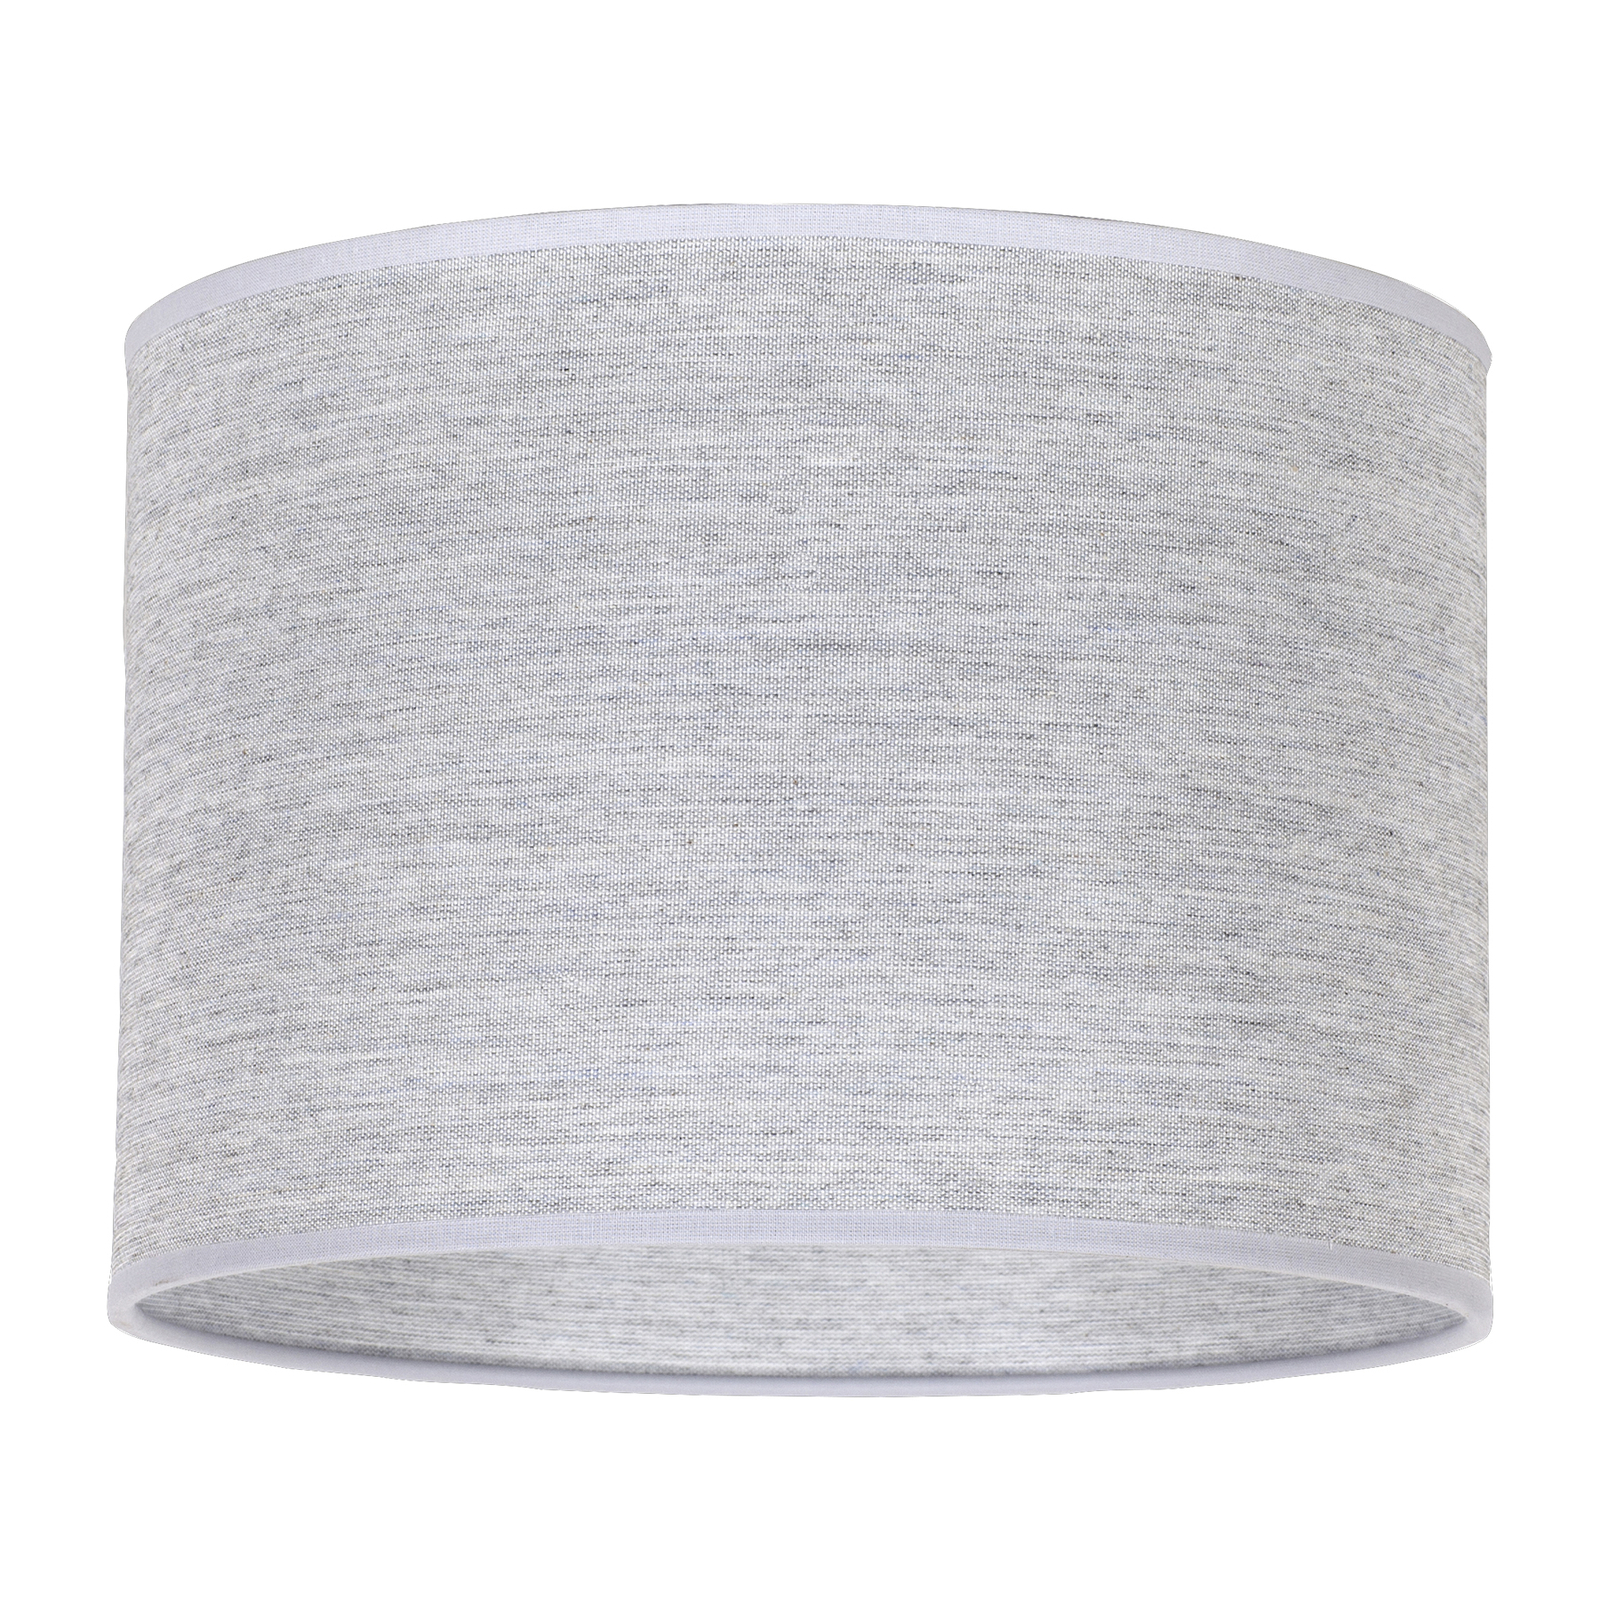 Lampeskjerm Roller, grå, Ø 25 cm, høyde 18 cm